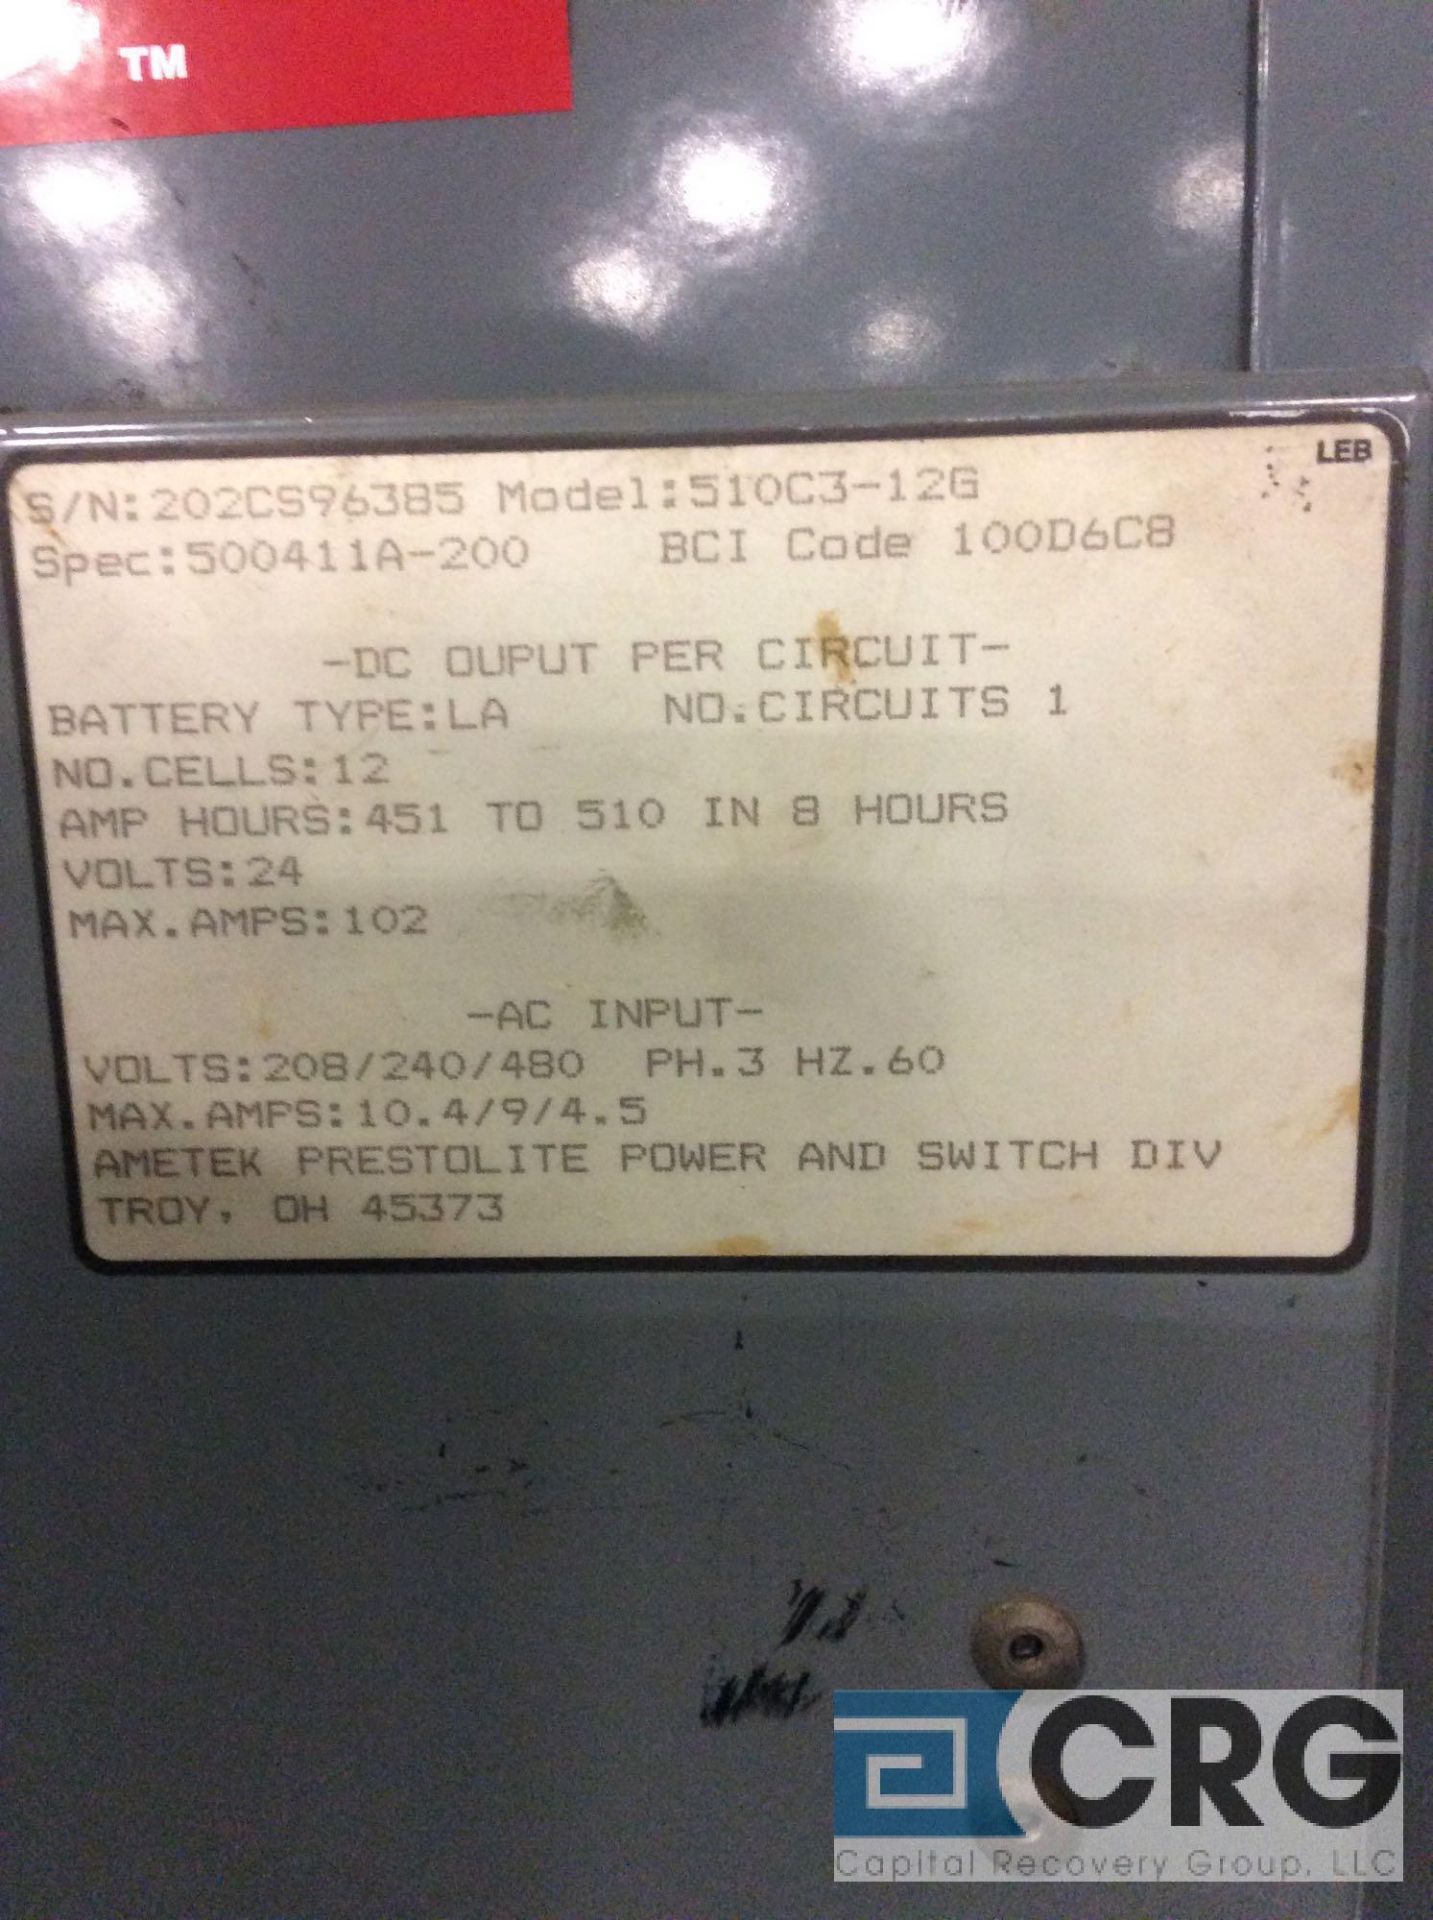 Prestolite Power 24 volt charger, 510-C3-12G - Image 2 of 2